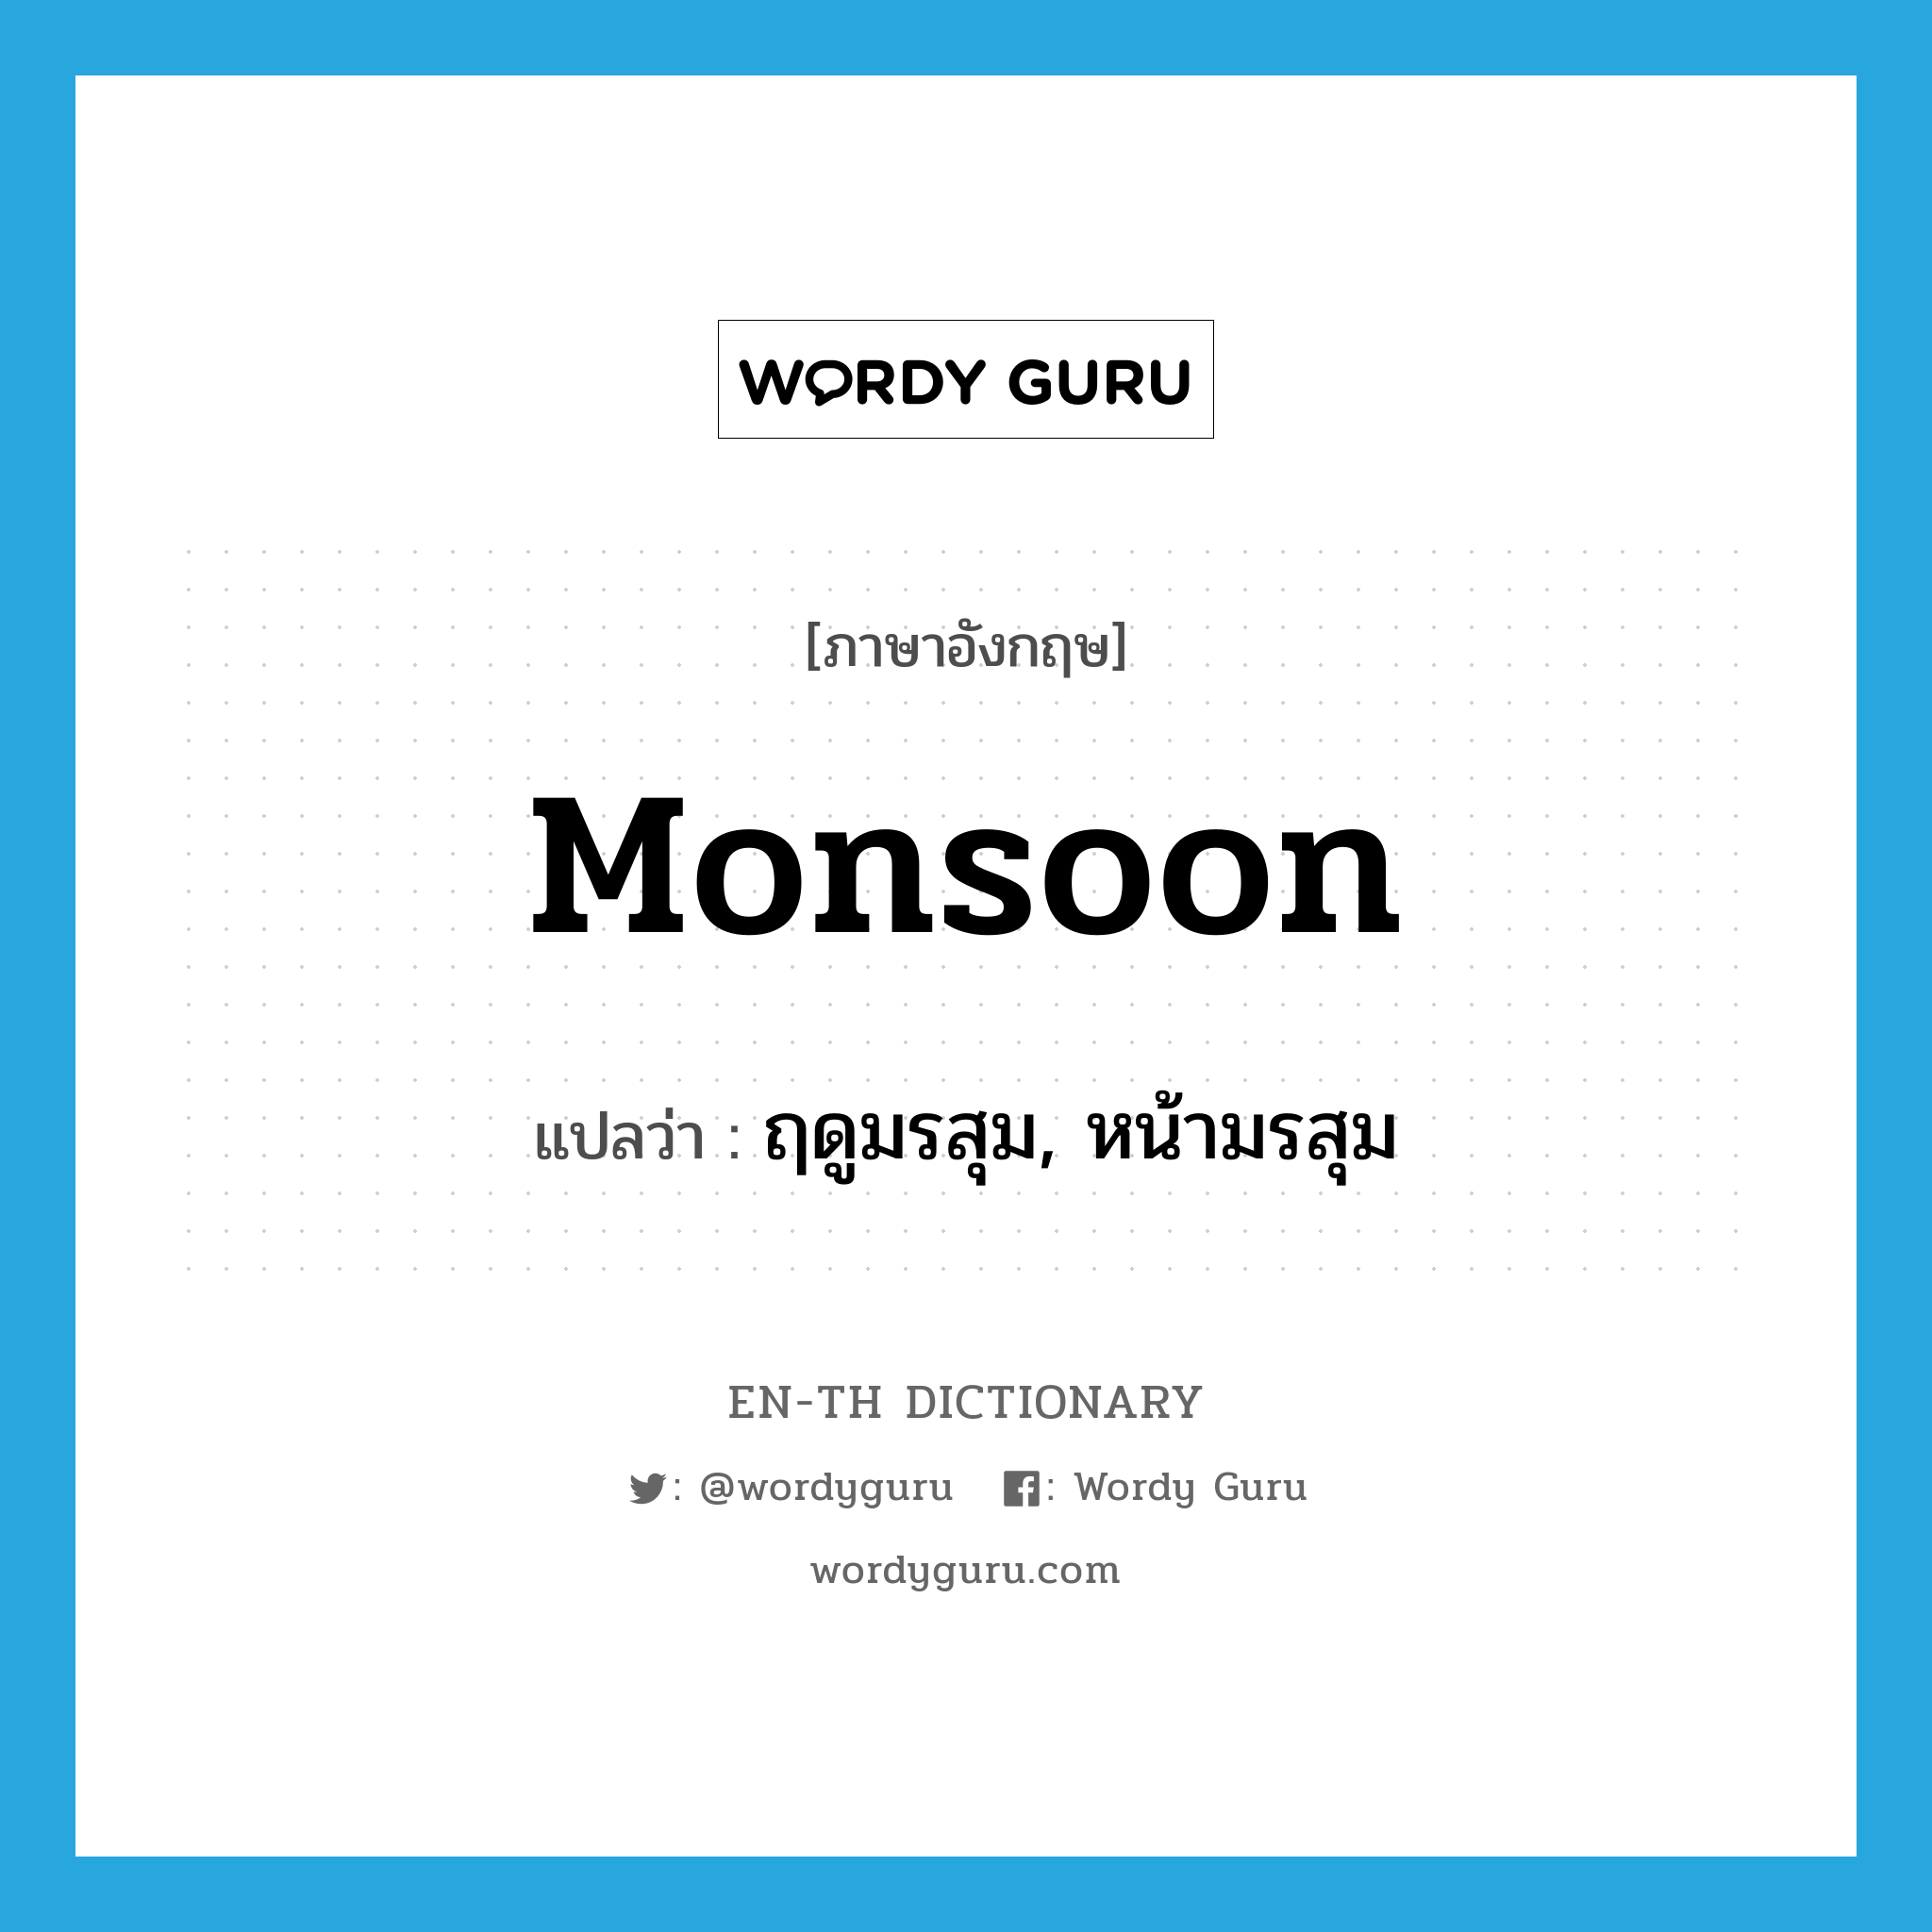 ฤดูมรสุม, หน้ามรสุม ภาษาอังกฤษ?, คำศัพท์ภาษาอังกฤษ ฤดูมรสุม, หน้ามรสุม แปลว่า monsoon ประเภท N หมวด N